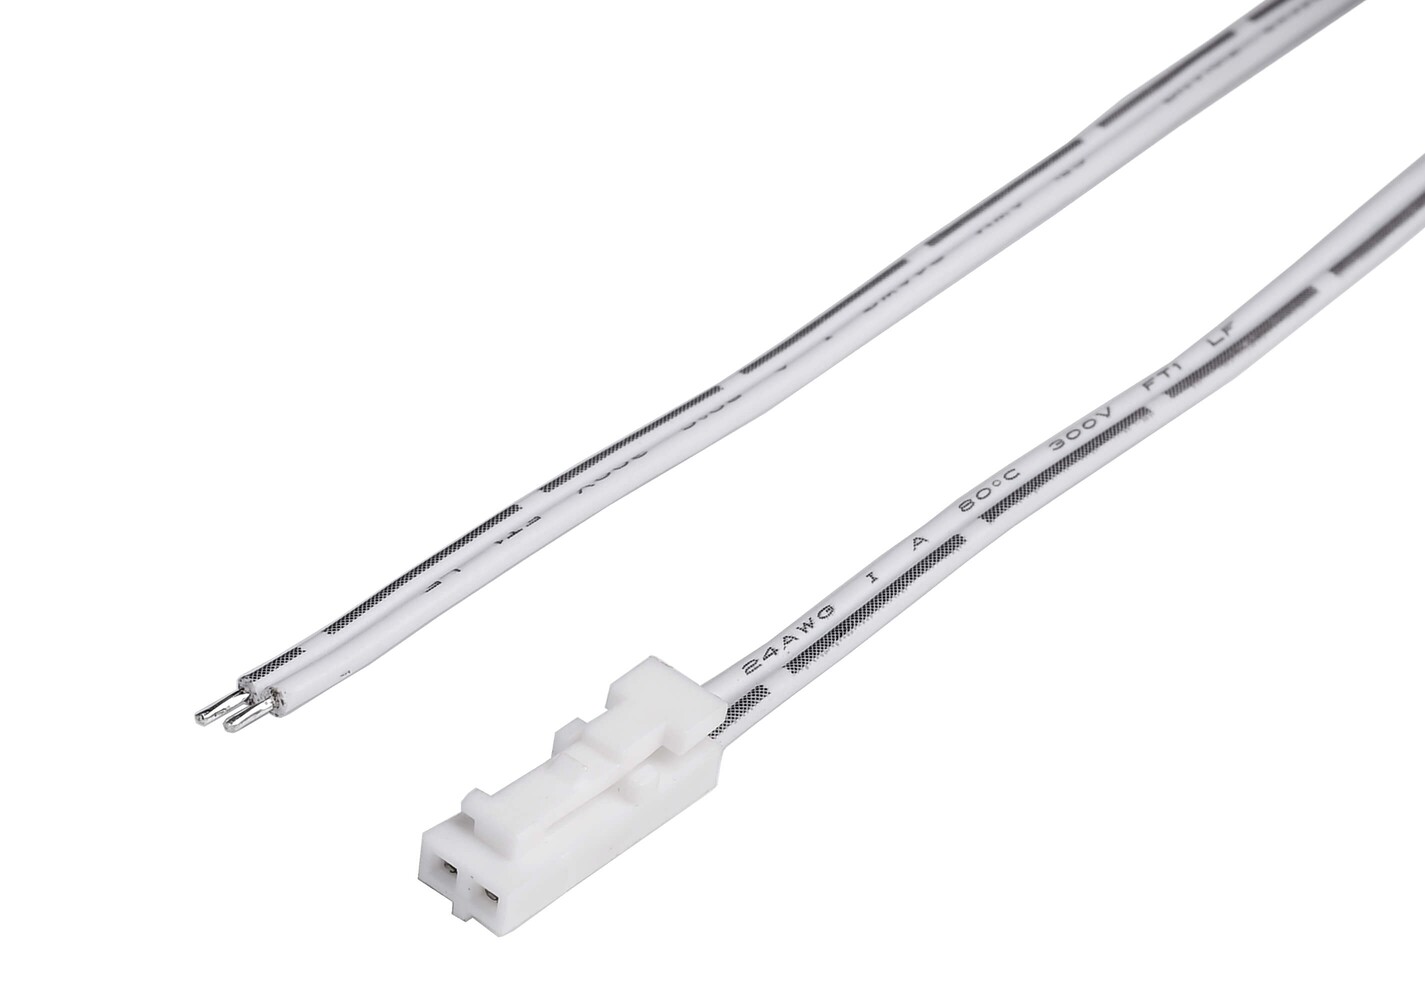 Robustes Anschlusskabel und Stecker von Deko-Light für optmierte Beleuchtungslösungen